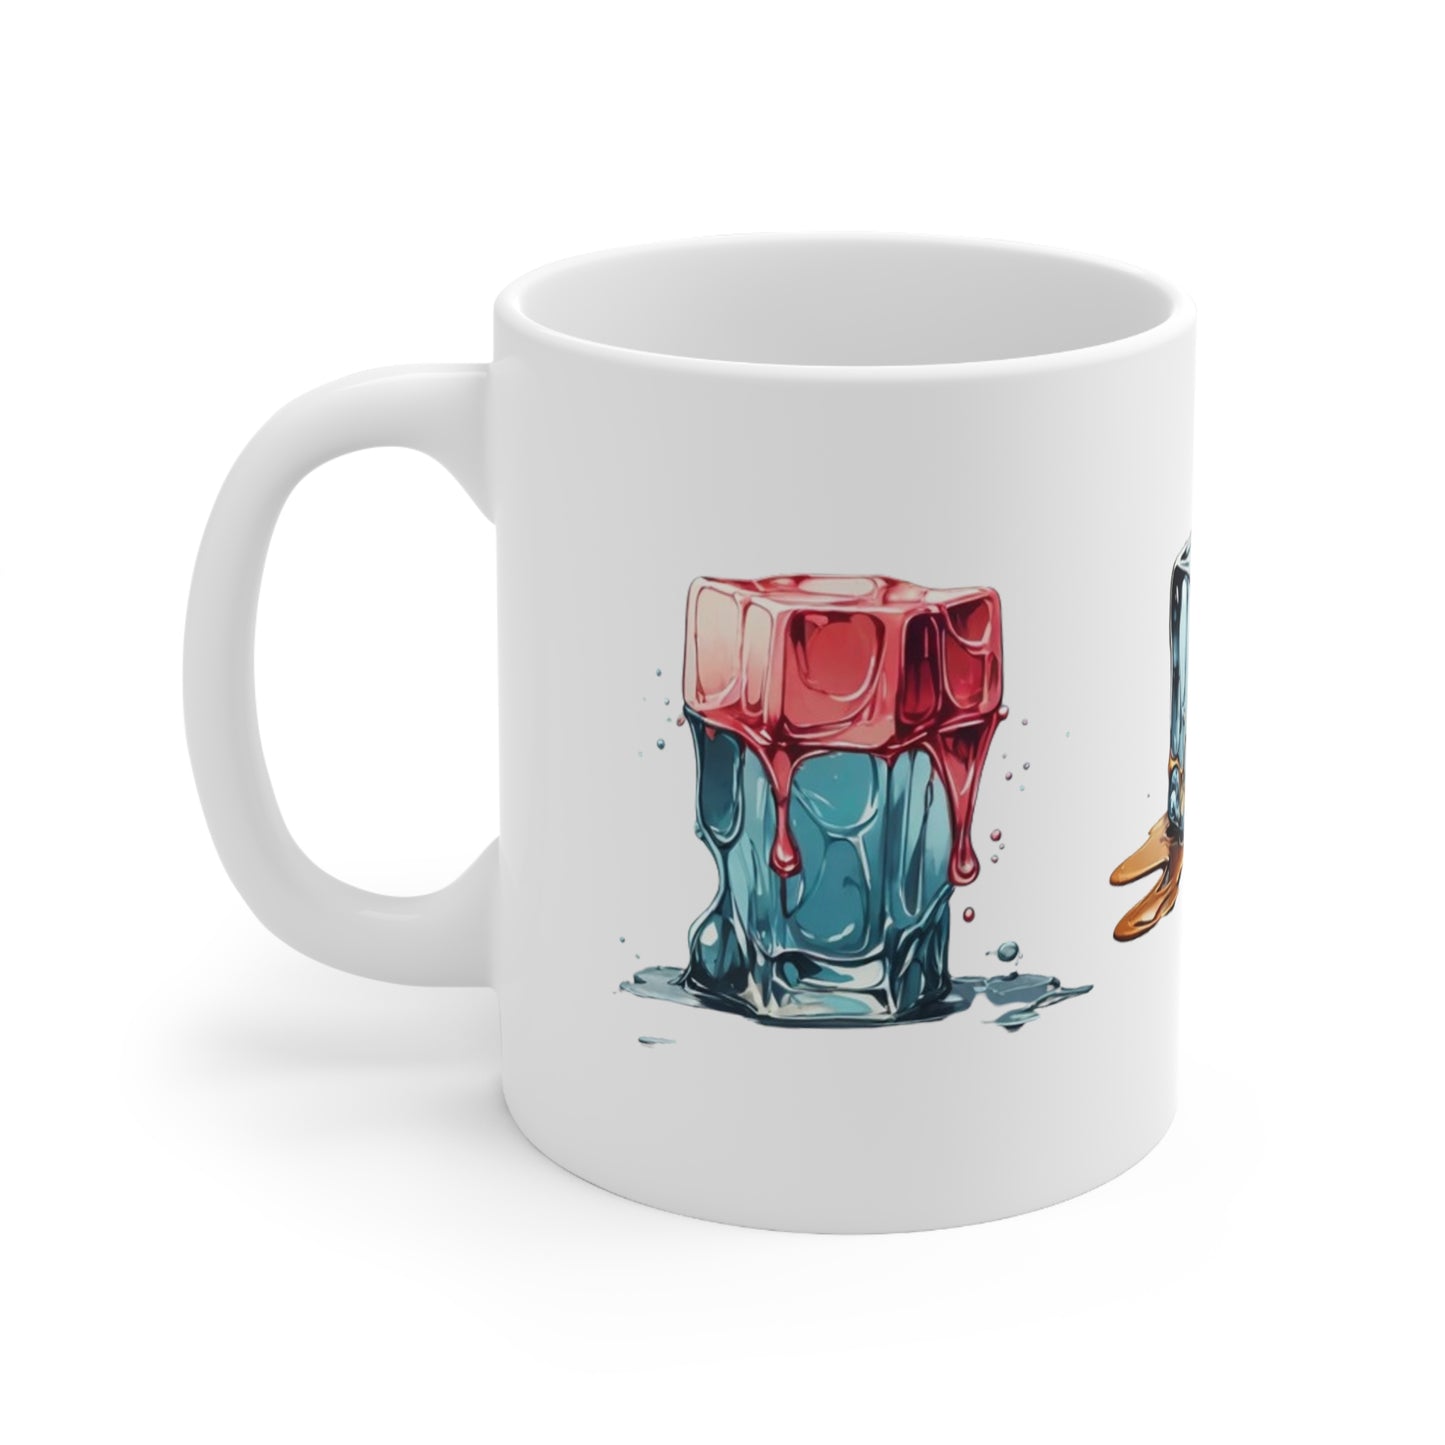 Melting Ice Cubes Mug - Ceramic Coffee Mug 11oz